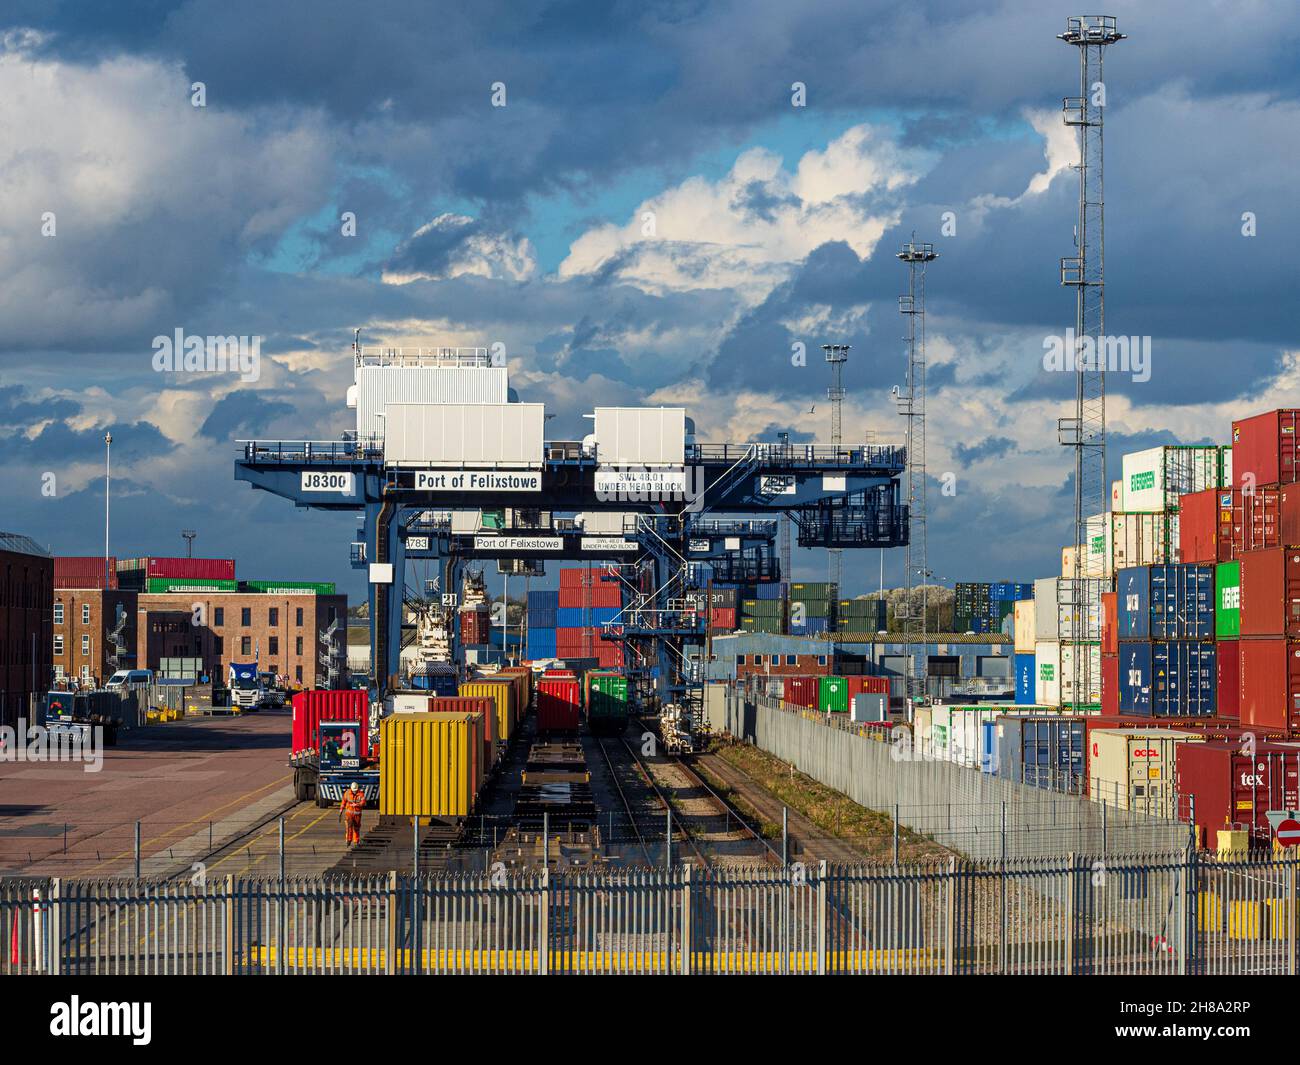 Rail Freight Terminal - Eisenbahn Container Frachtumschlag im Hafen von Felixstowe. Container werden auf Containerzüge für den Weitertransport verladen. Stockfoto